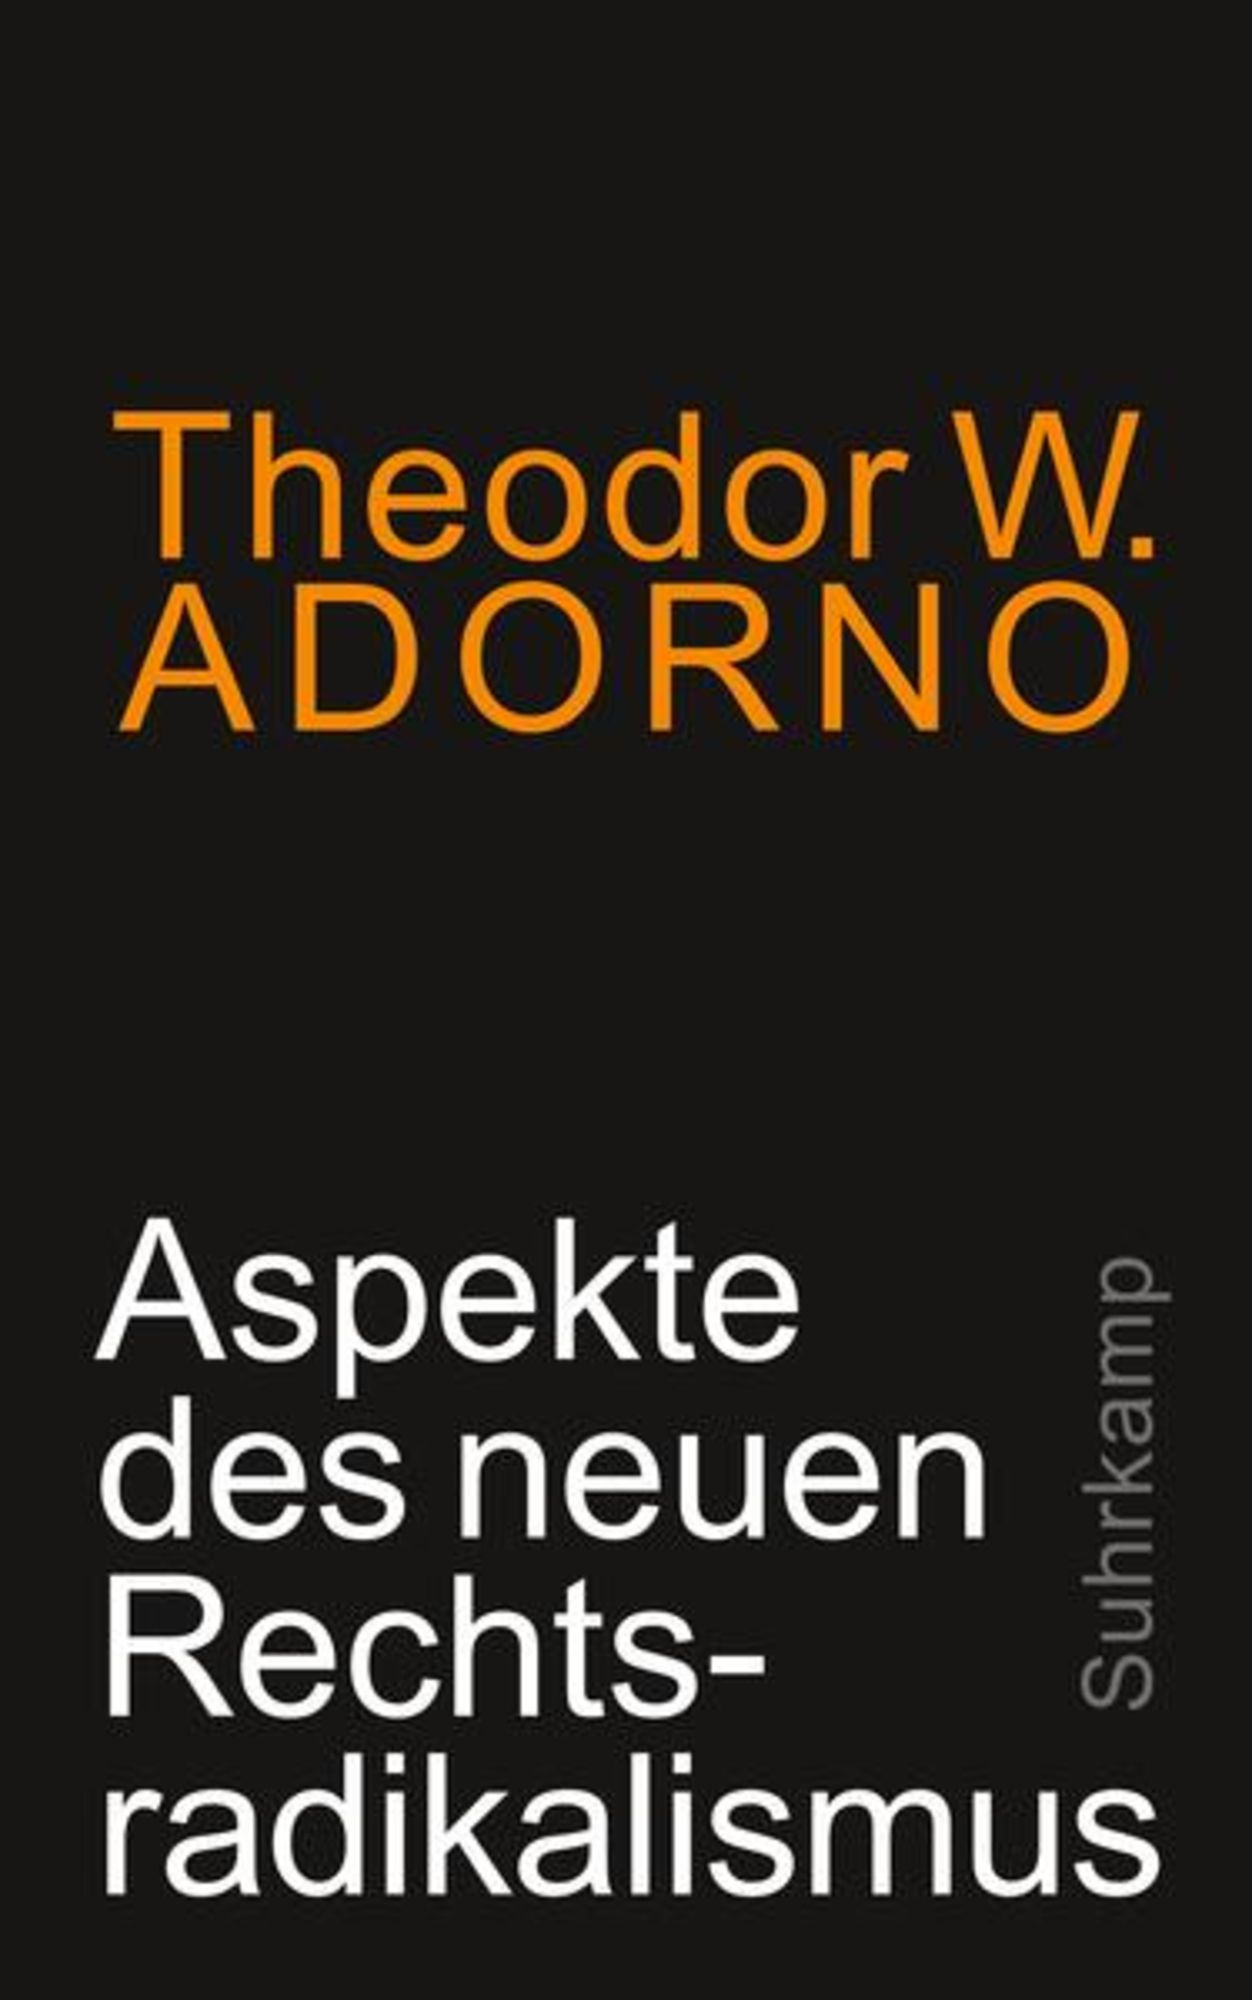 Aspekte des neuen Rechtsradikalismus' von 'Theodor W. Adorno' - Buch -  '978-3-518-58737-9